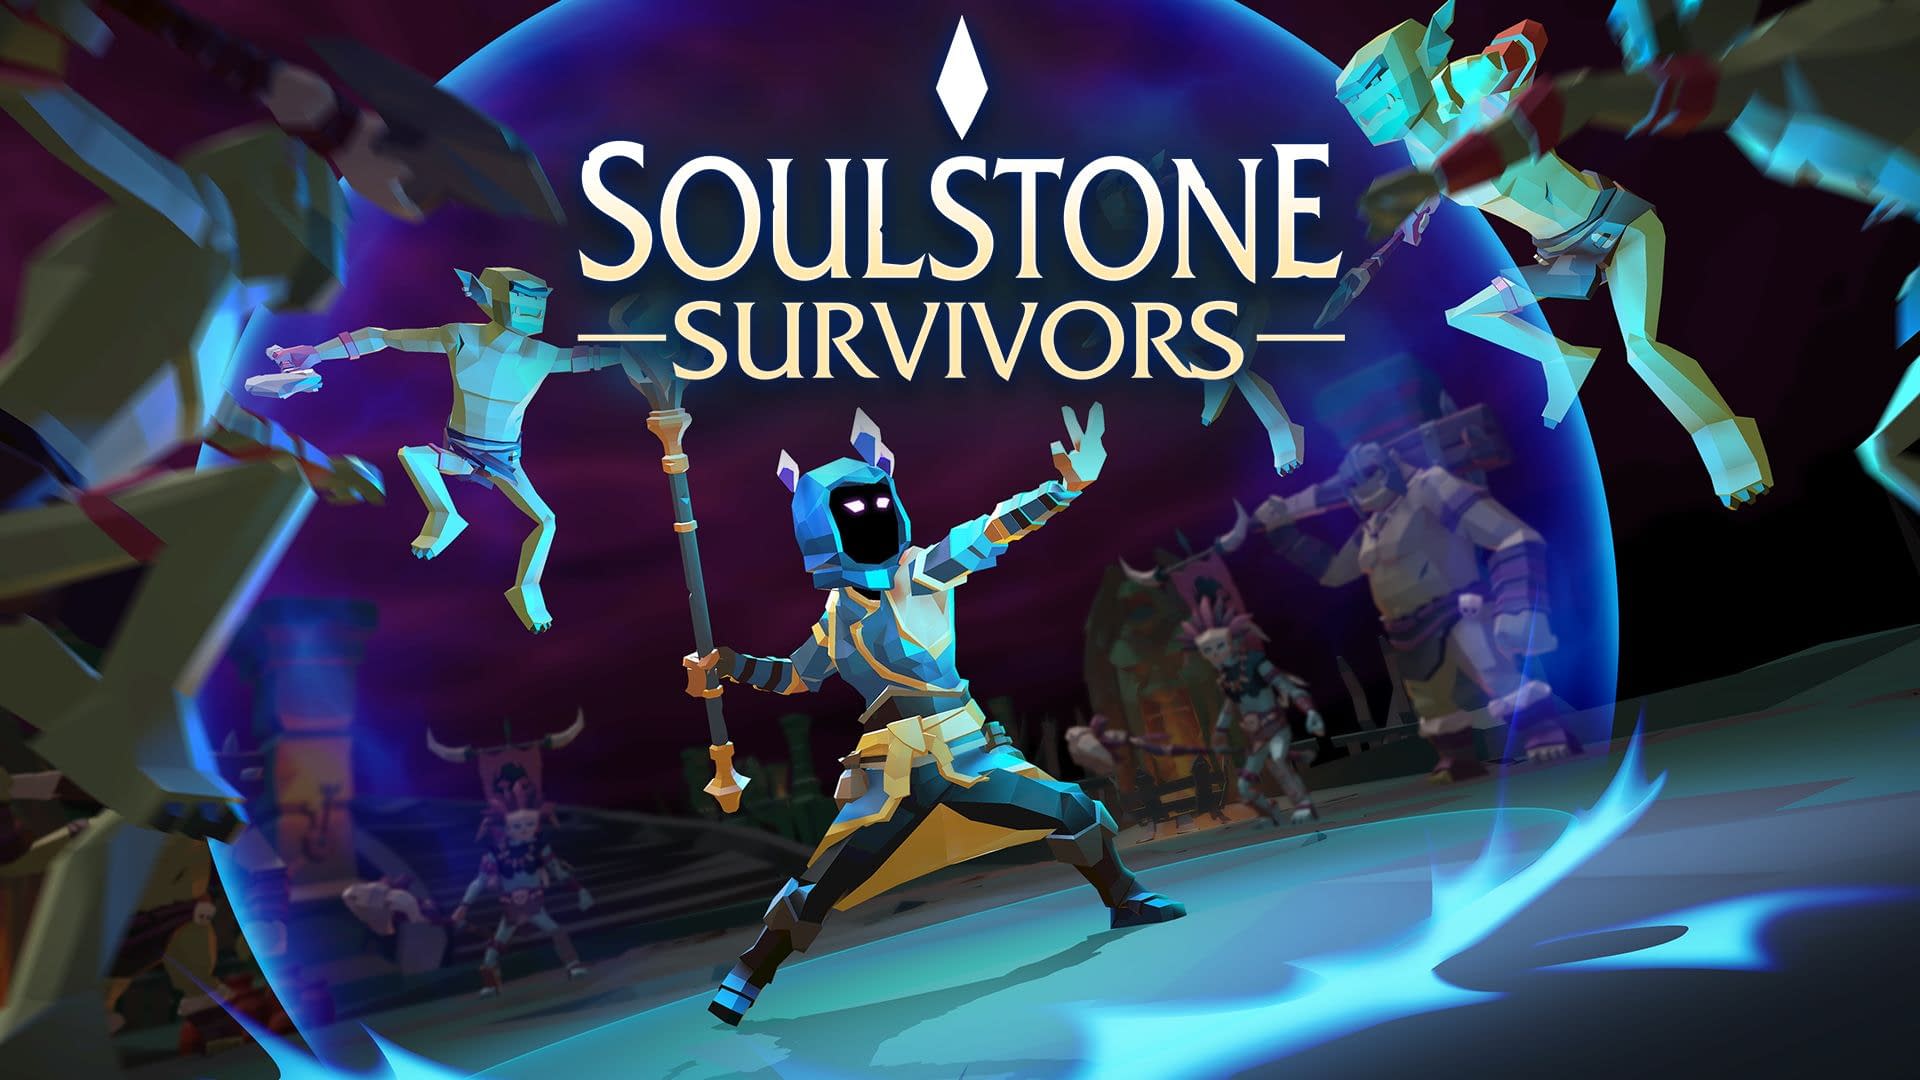 Soulstone Survivors Guide: The Barbarian